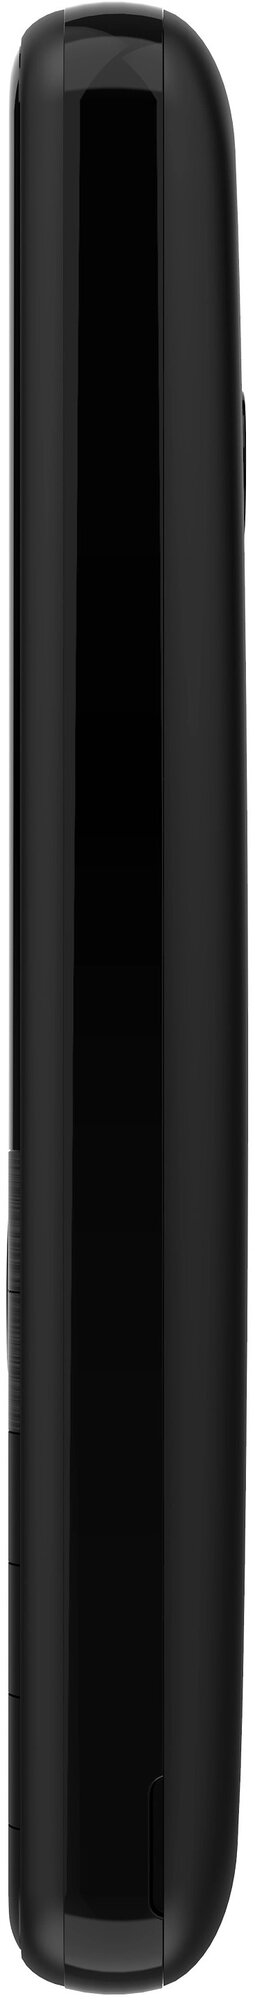 Сотовый телефон PHILIPS E172 Xenium black - черный